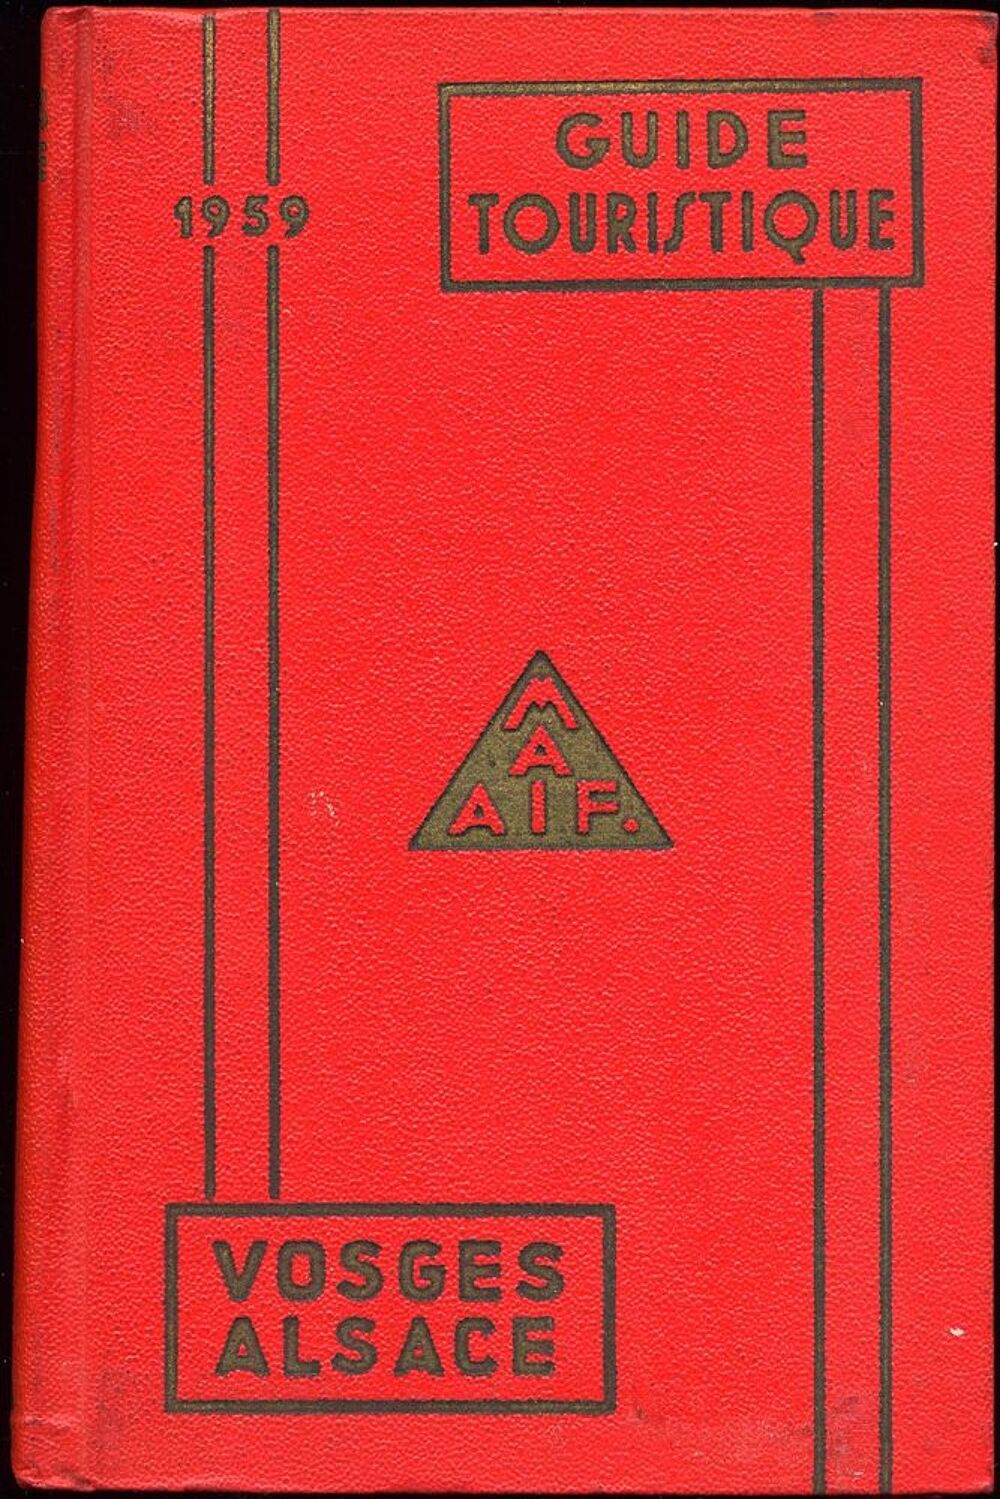 Guide touristique MAIF
Vosges et de l'Alsace
1959
Livres et BD